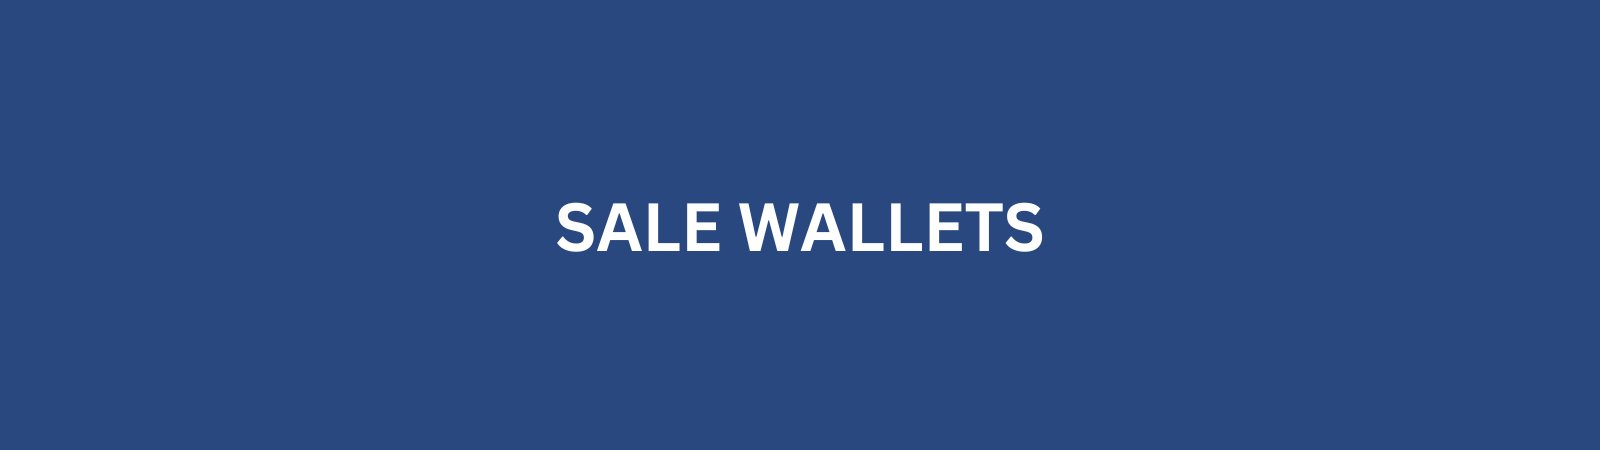 Sale Wallets